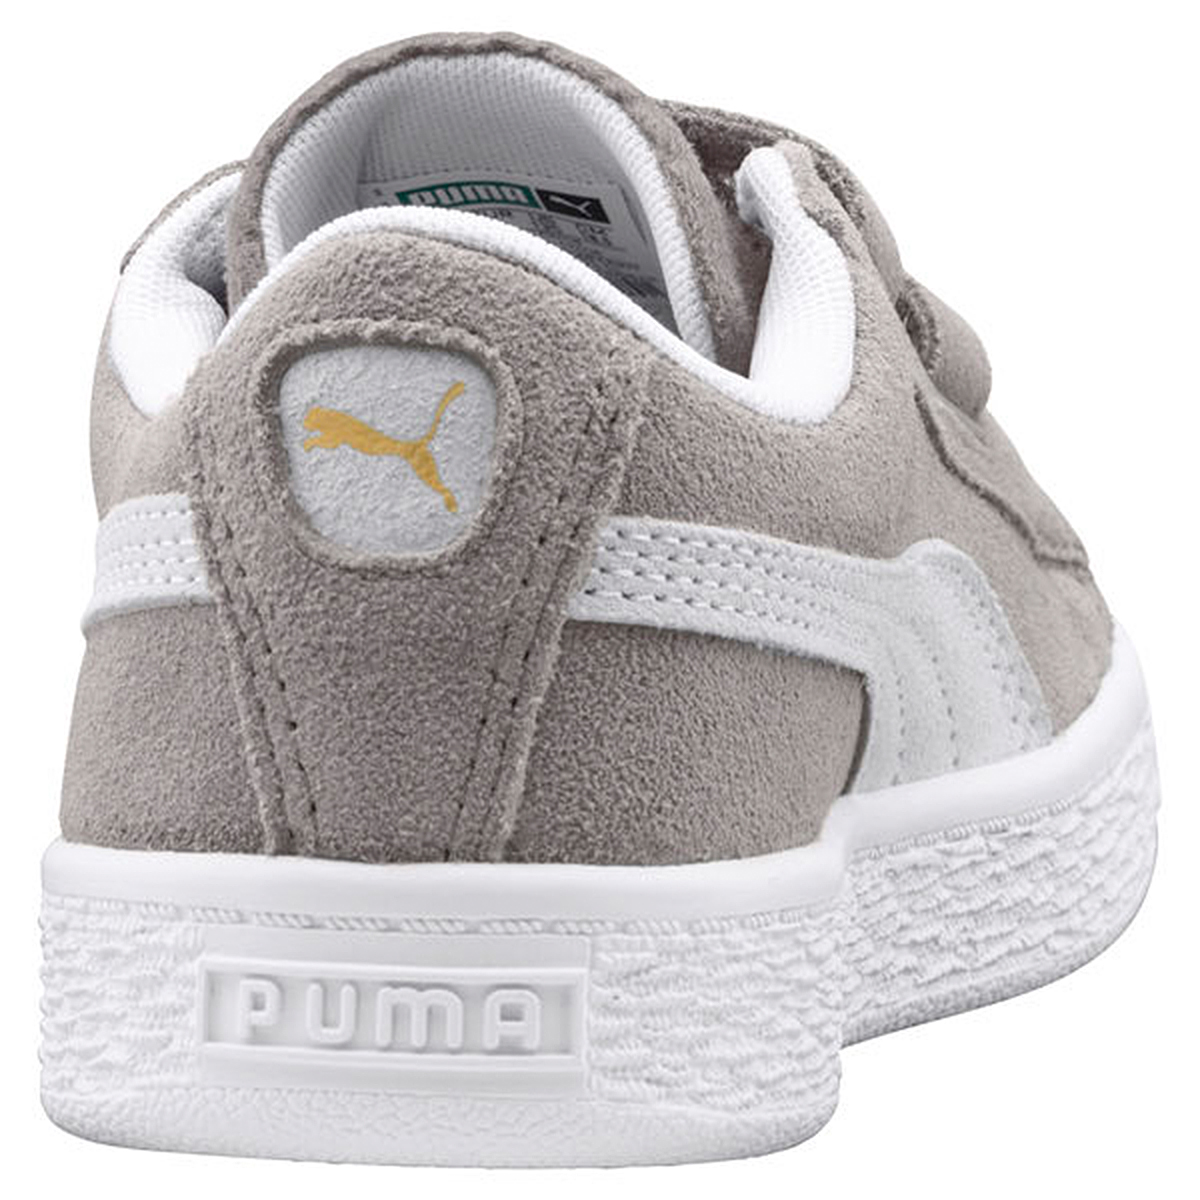 Puma Suede Classic V Inf Kinder Sneaker Schuhe 365077 14 grau